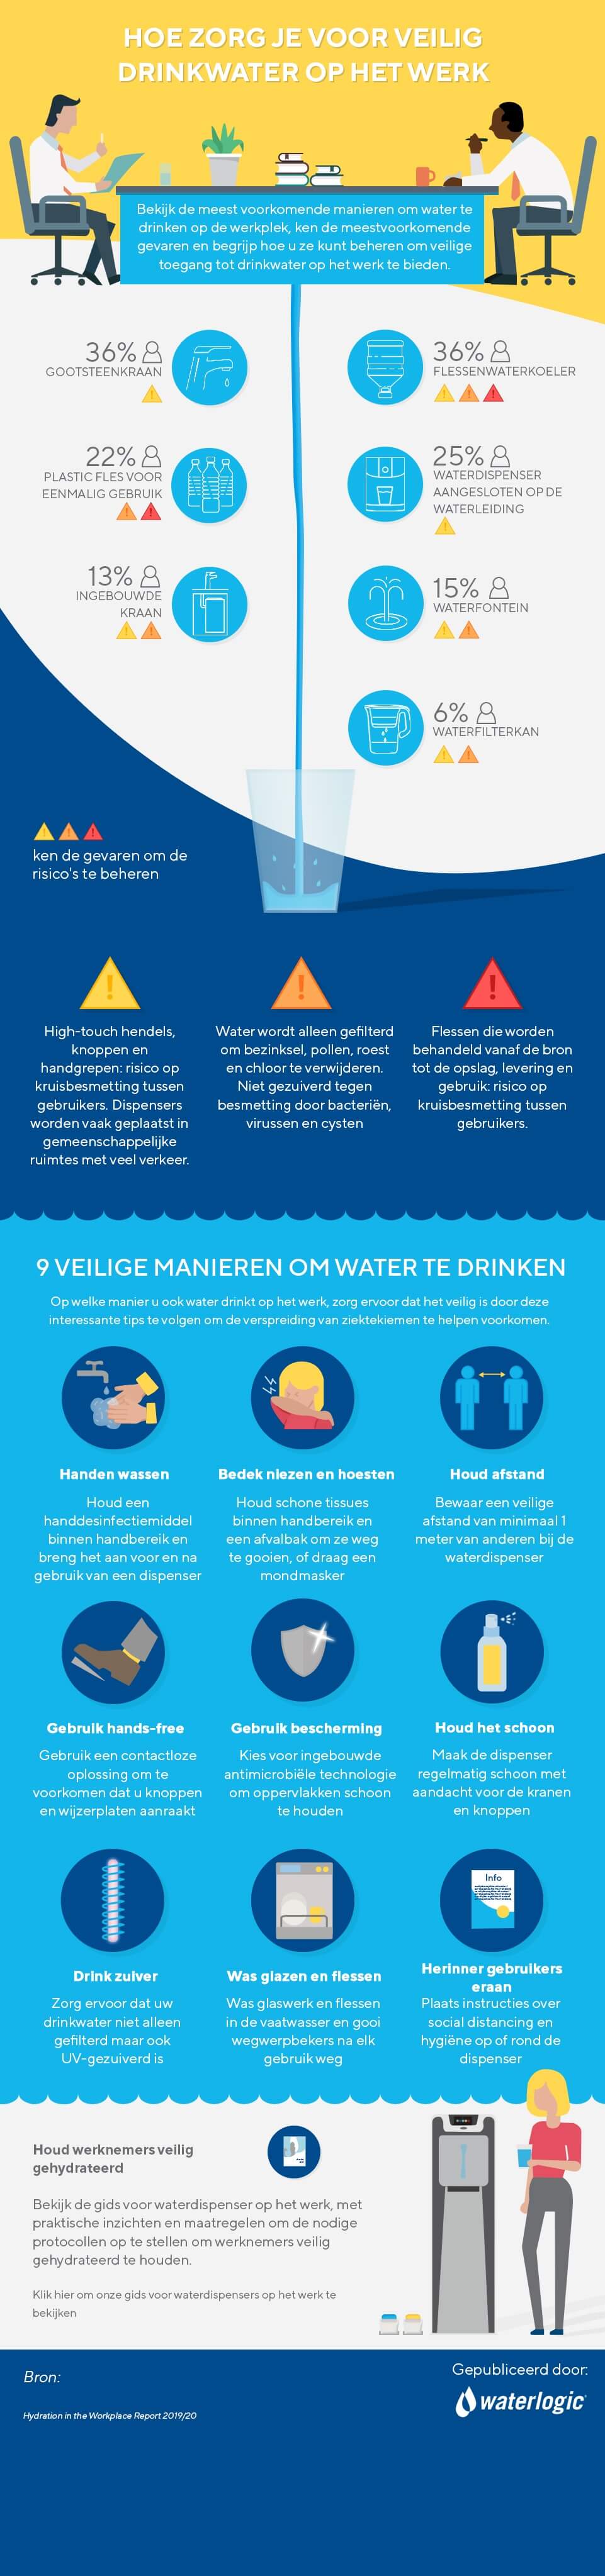 9 veilige manieren om water te drinken